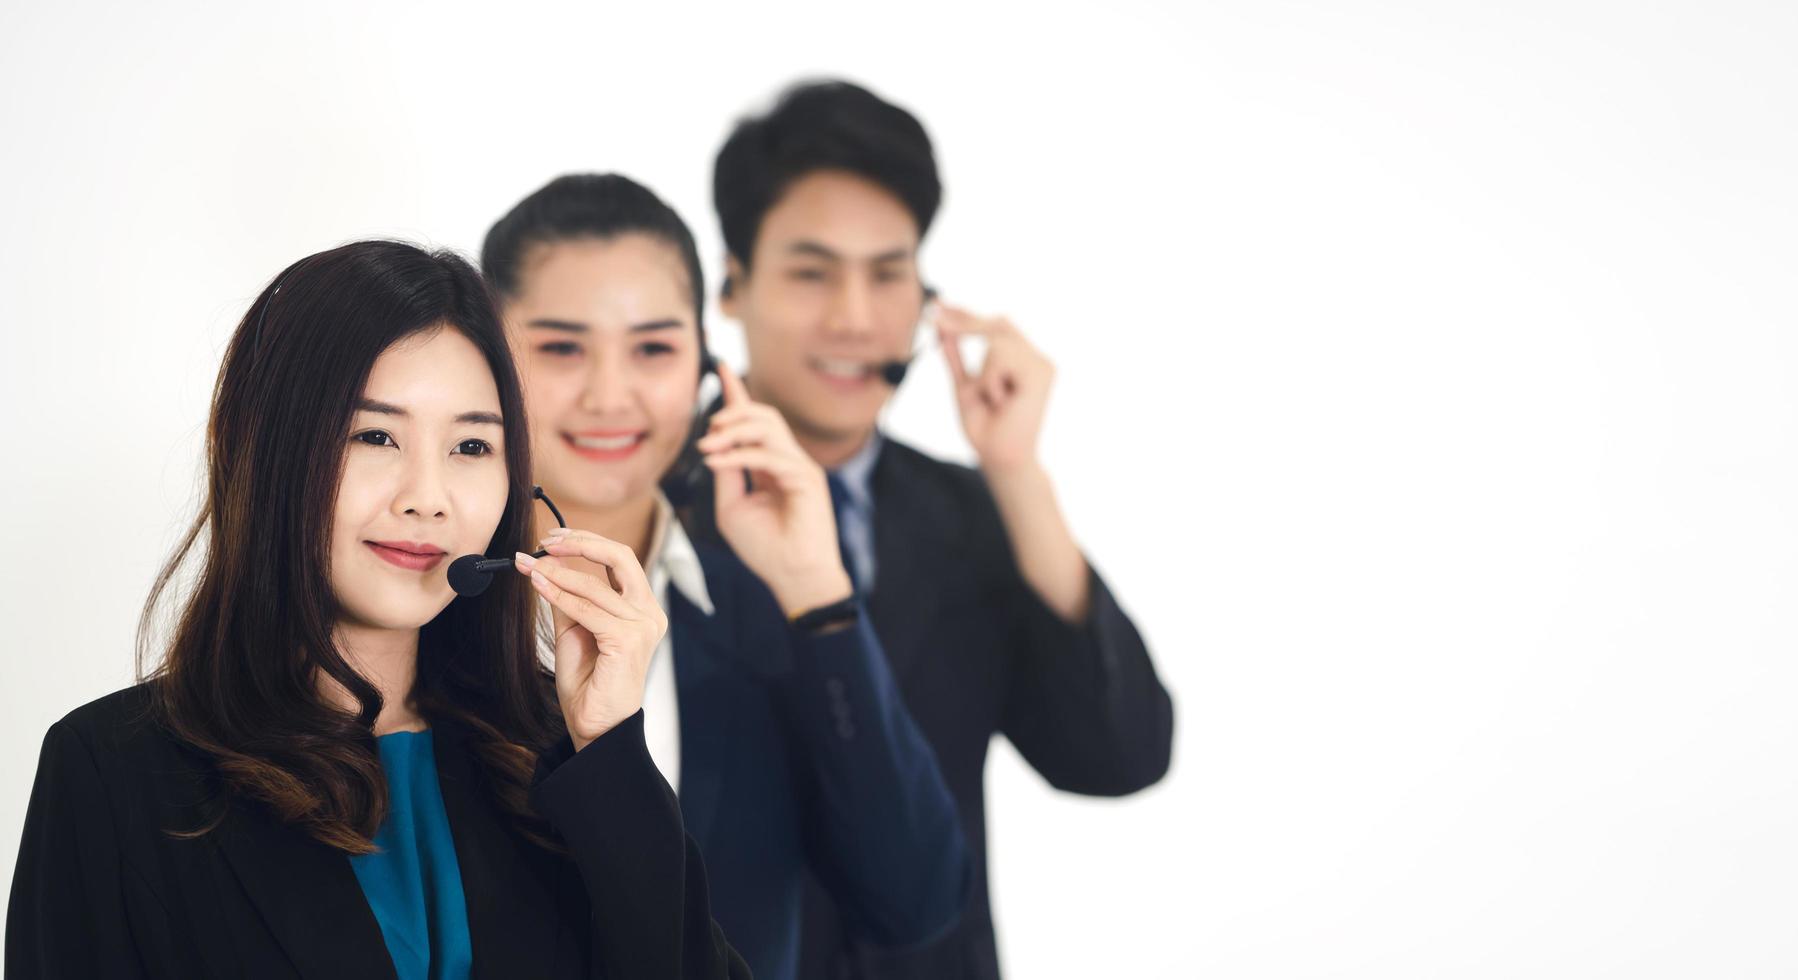 retrato de sorriso positivo jovem equipe de negócios asiática equipe de call center mulher e homem foto